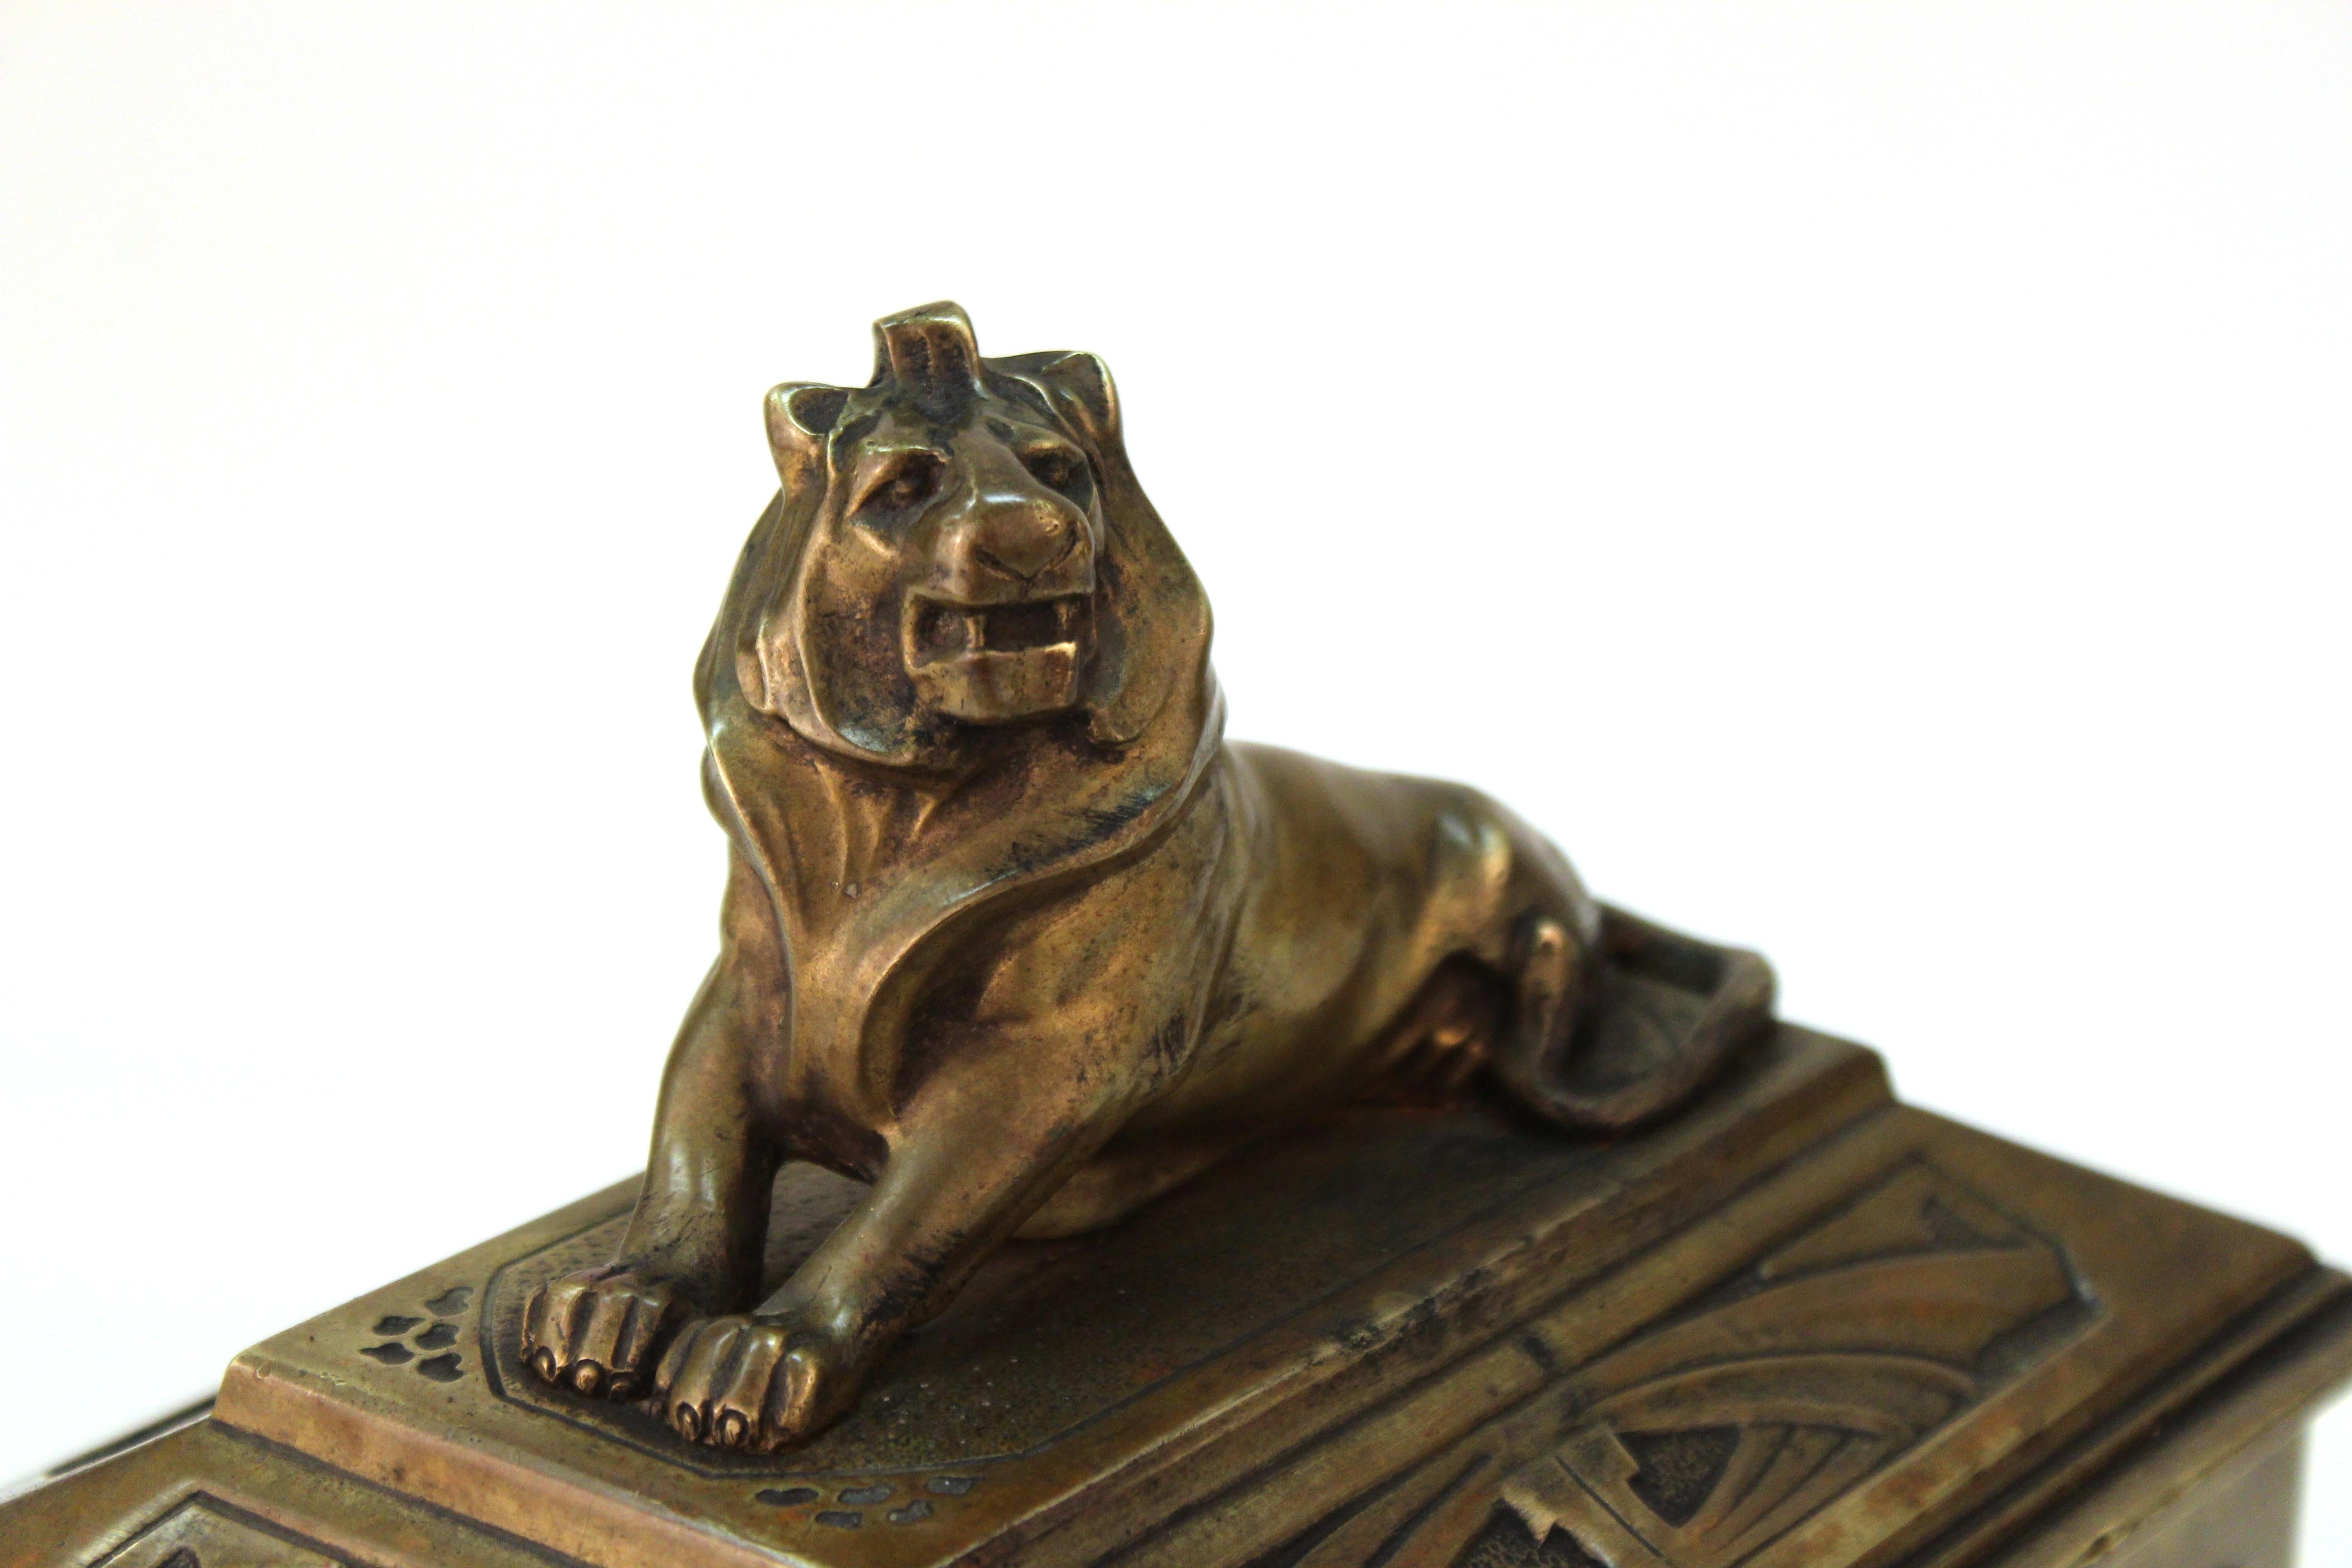 German Jugendstil Bronze Jewelry Box or Casket with Lion Guardian Lid 1